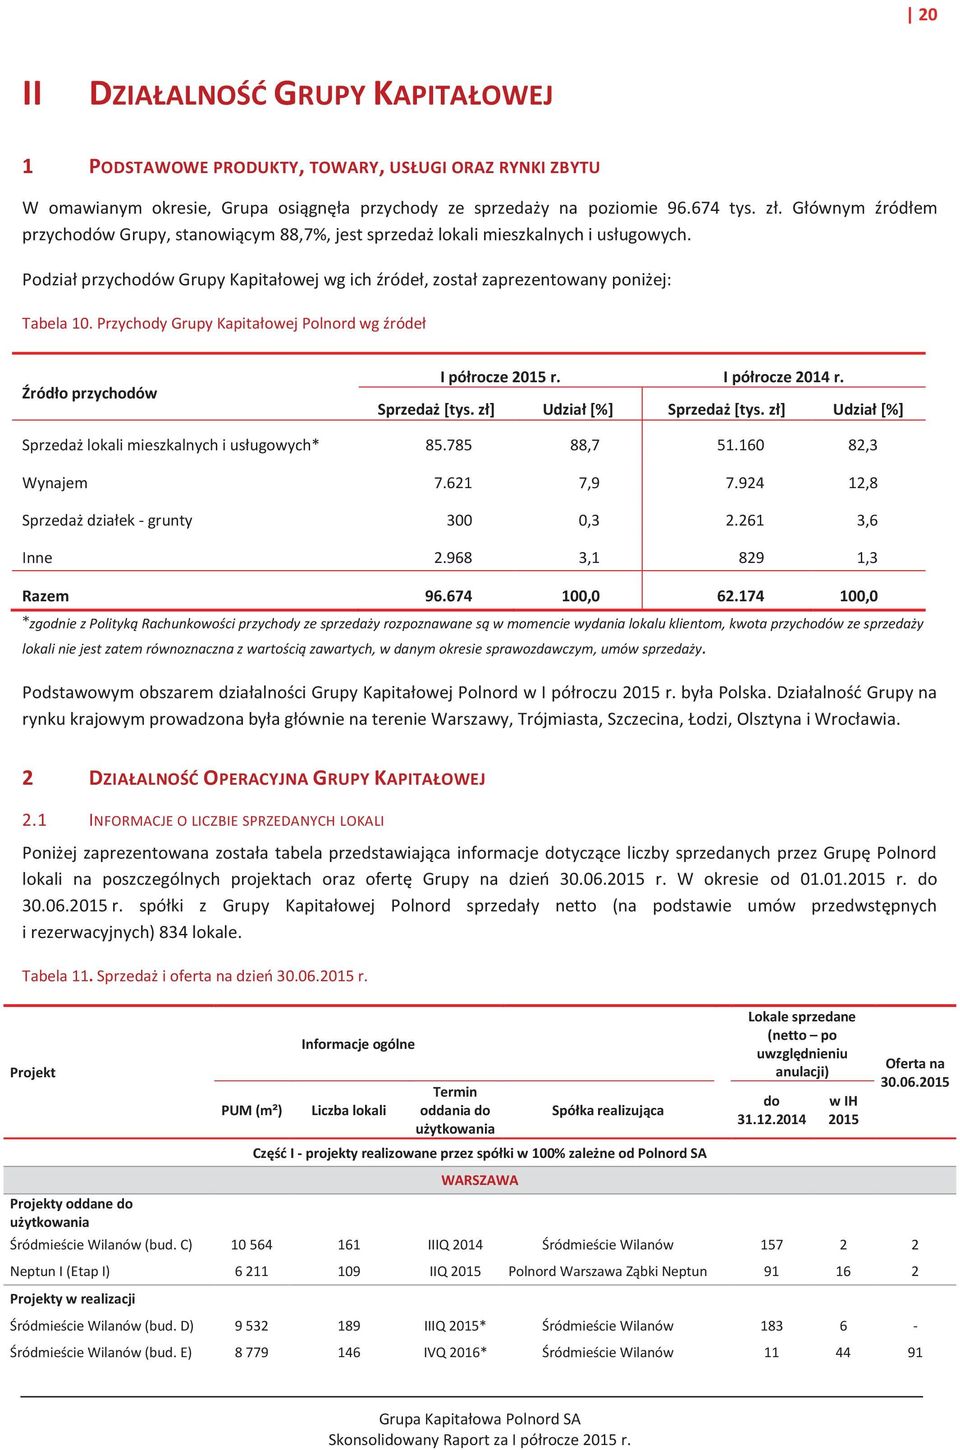 Przychody Grupy Kapitałowej Polnord wg źródeł Źródło przychodów I półrocze 2015 r. I półrocze 2014 r. Sprzedaż [tys. zł] Udział [%] Sprzedaż [tys.